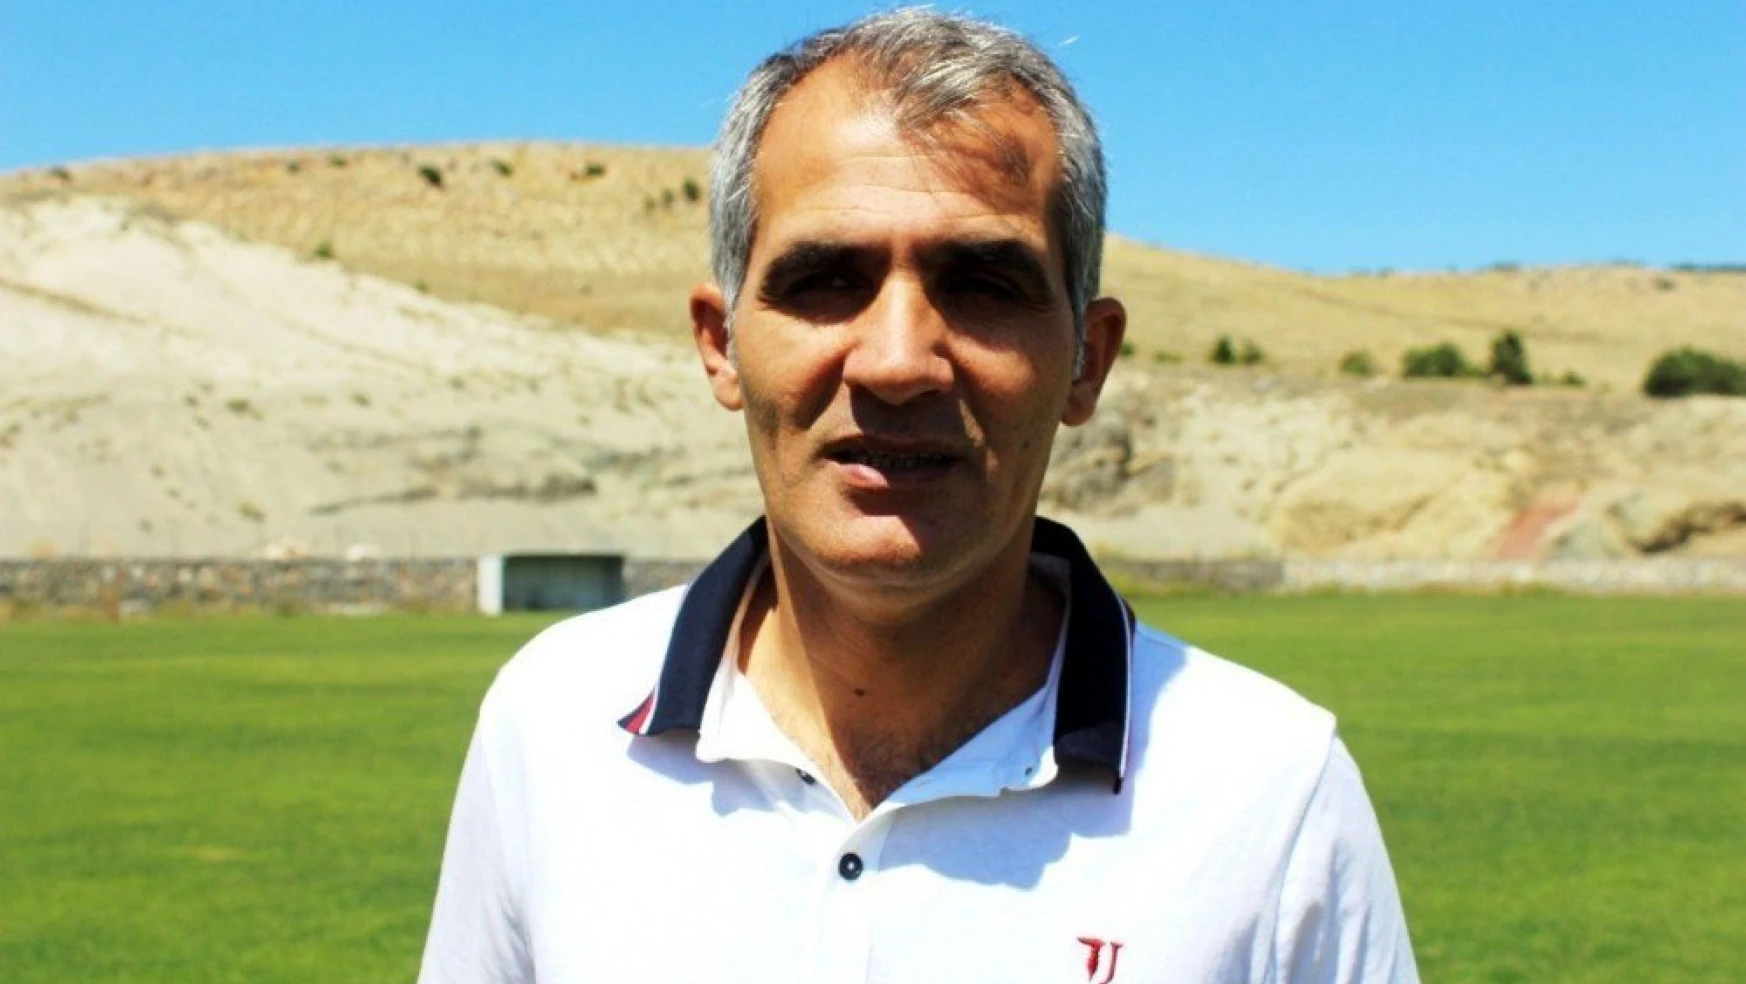 Evkur Yeni Malatyaspor'dan transfer açıklaması